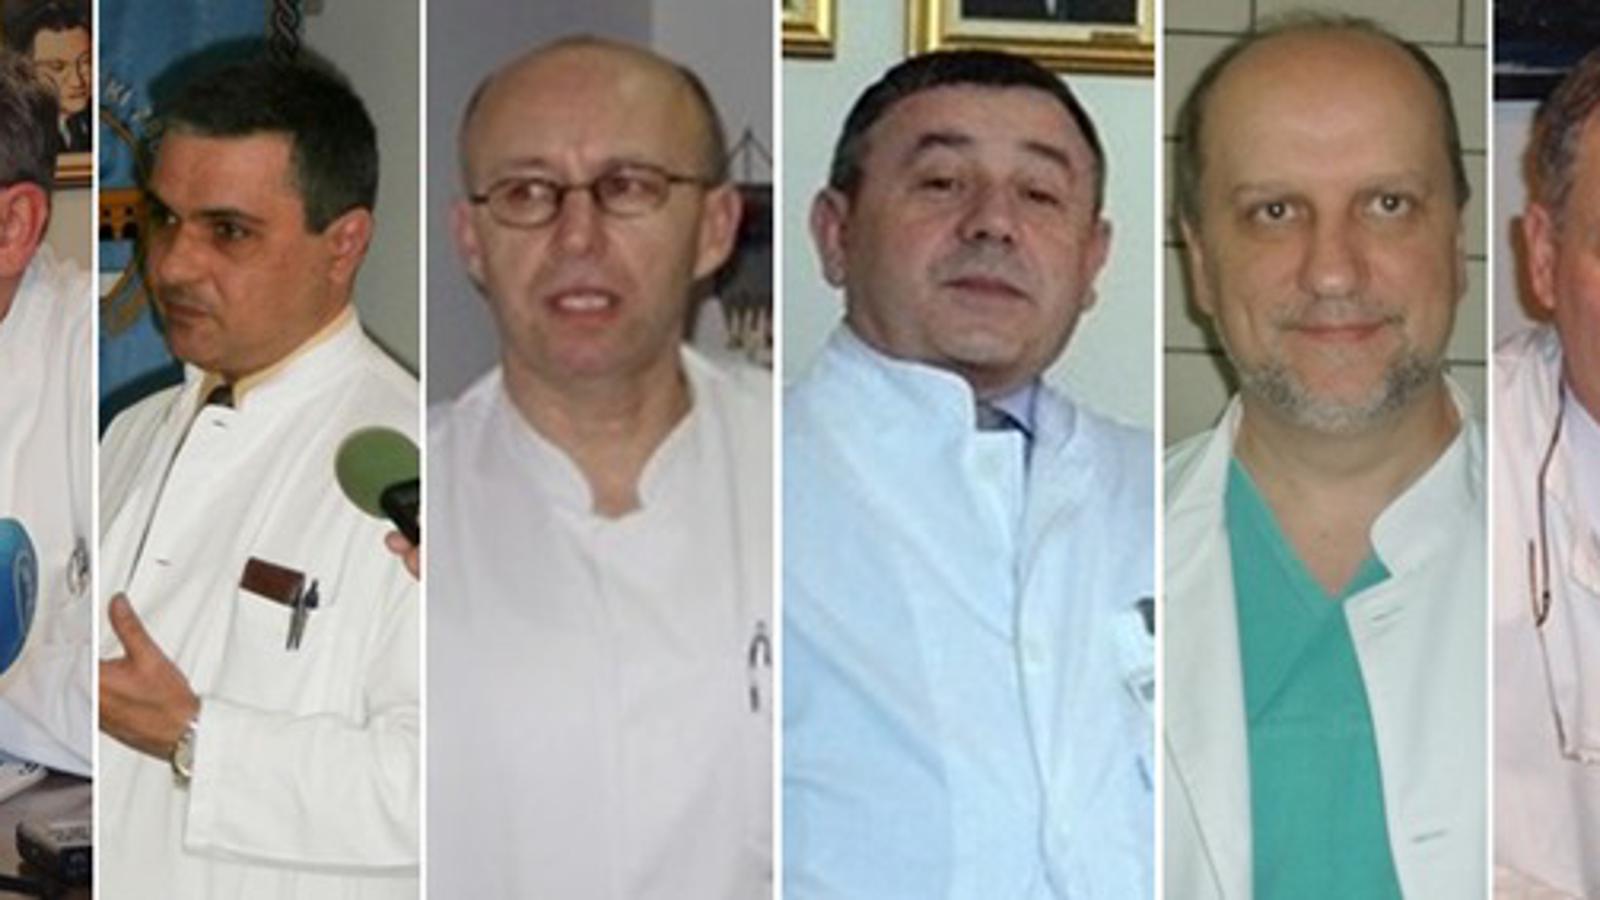 Mitrović, Biščević, Oršulić, Bitunjac, Samardžić, Jukić